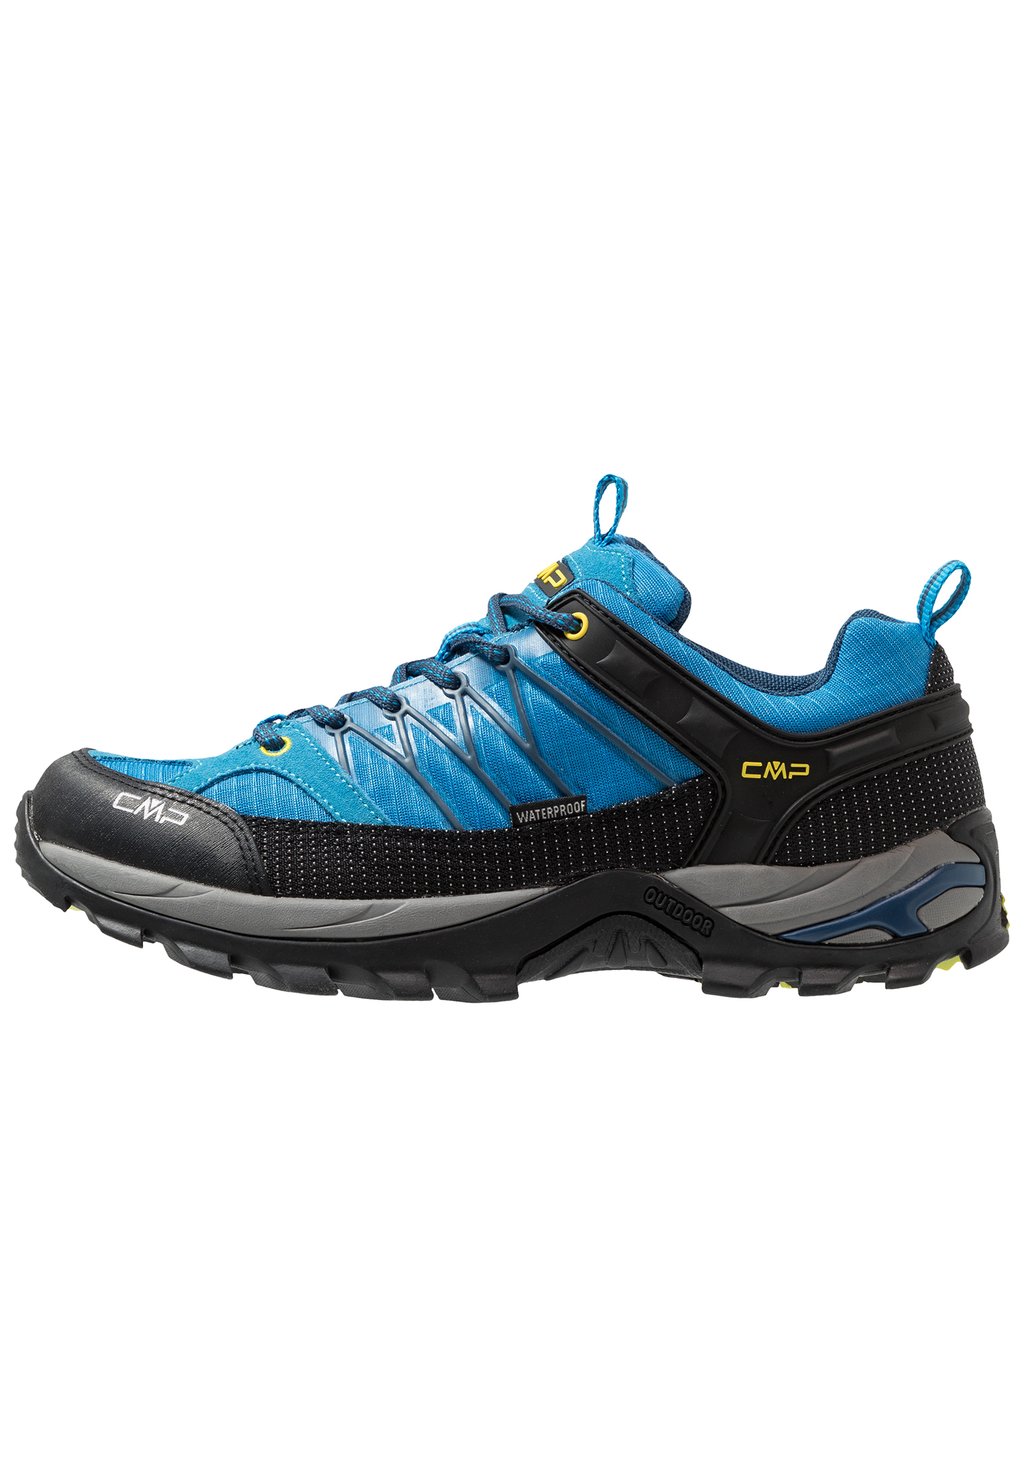 Походная обувь Rigel Low Trekking Shoes Wp CMP, цвет indigo/marine